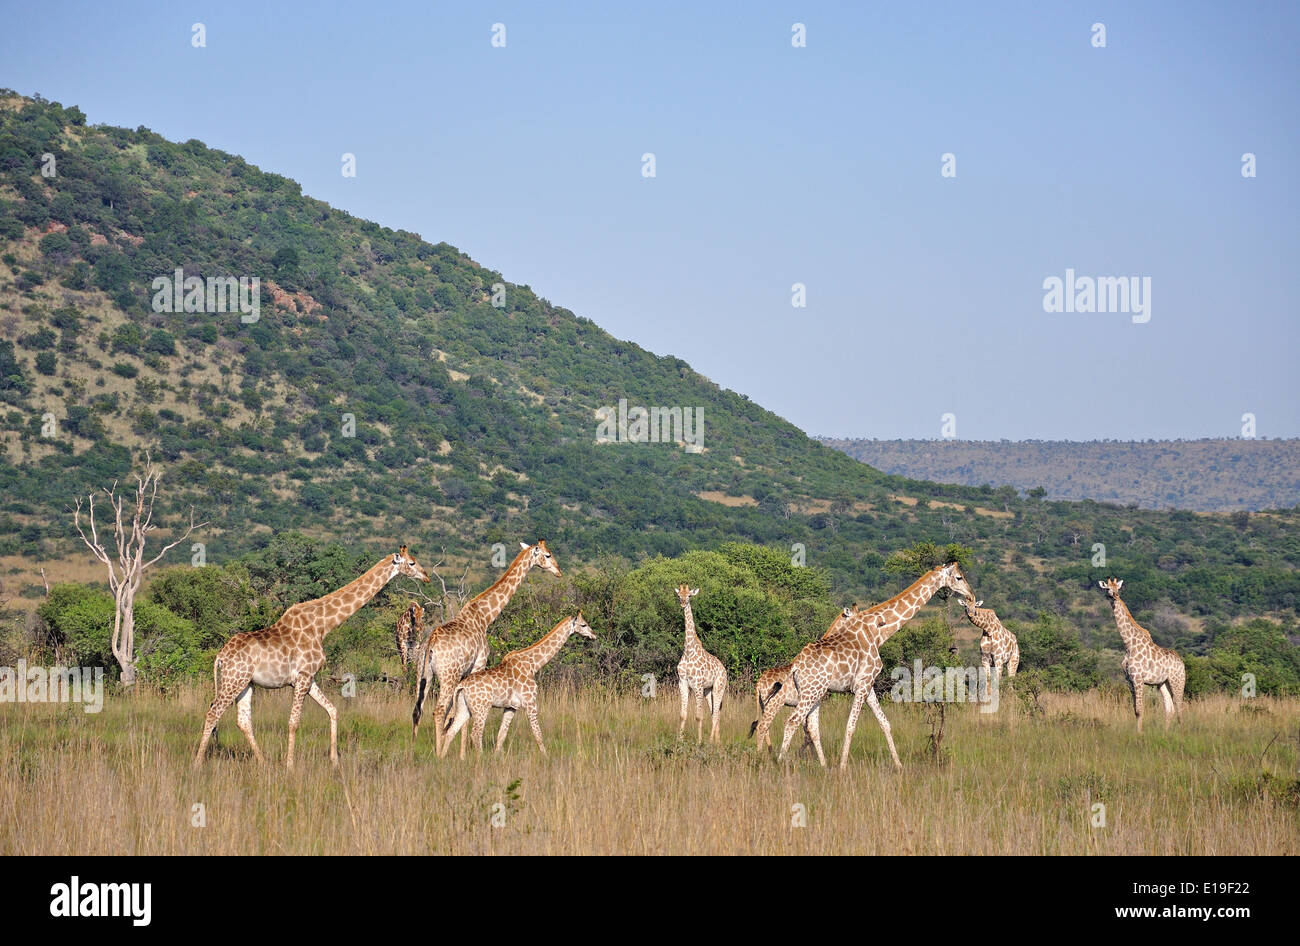 Les Girafes dans les prairies, Parc National de Pilanesberg, Pilanesberg, Province du Nord Ouest de la République d Afrique du Sud Banque D'Images